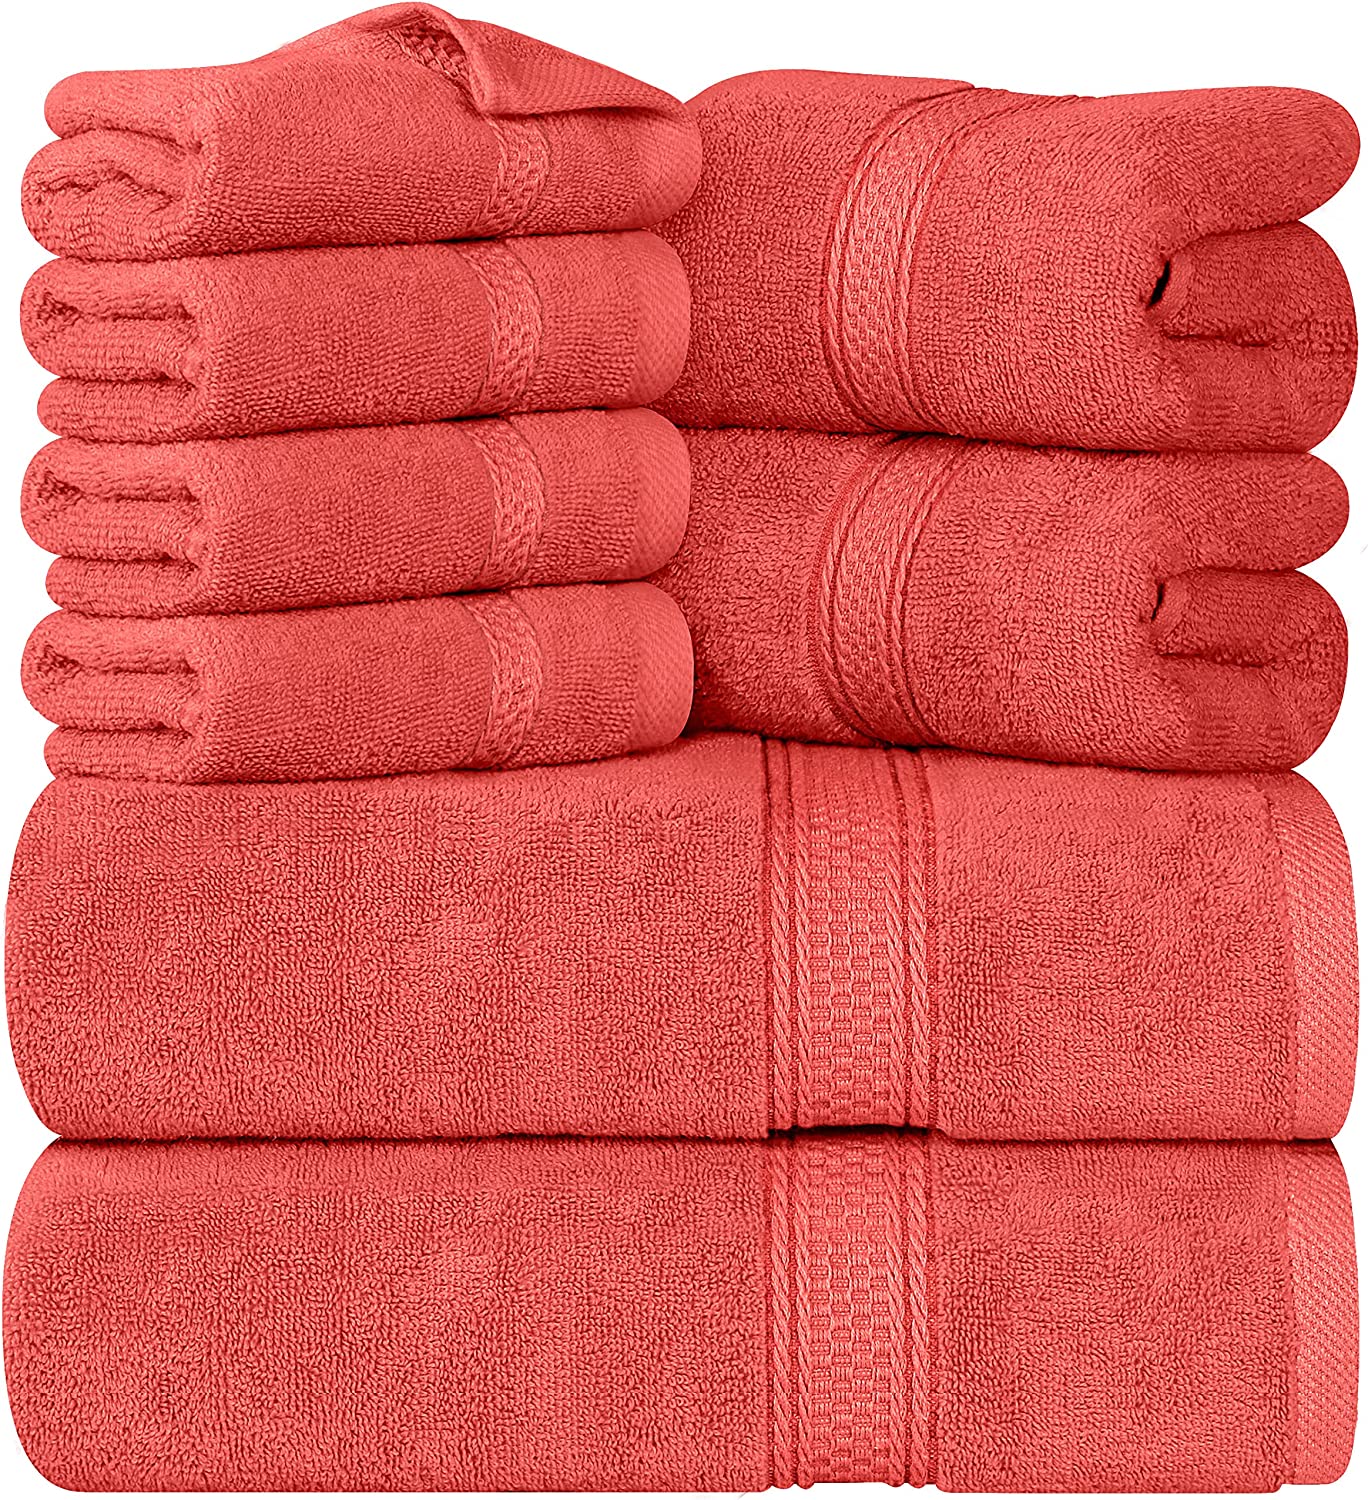 ▷ Renueva tus toallas de baño con este completo juego de 8 piezas Utopia  Towels sin que tus ahorros lo noten (mucho)